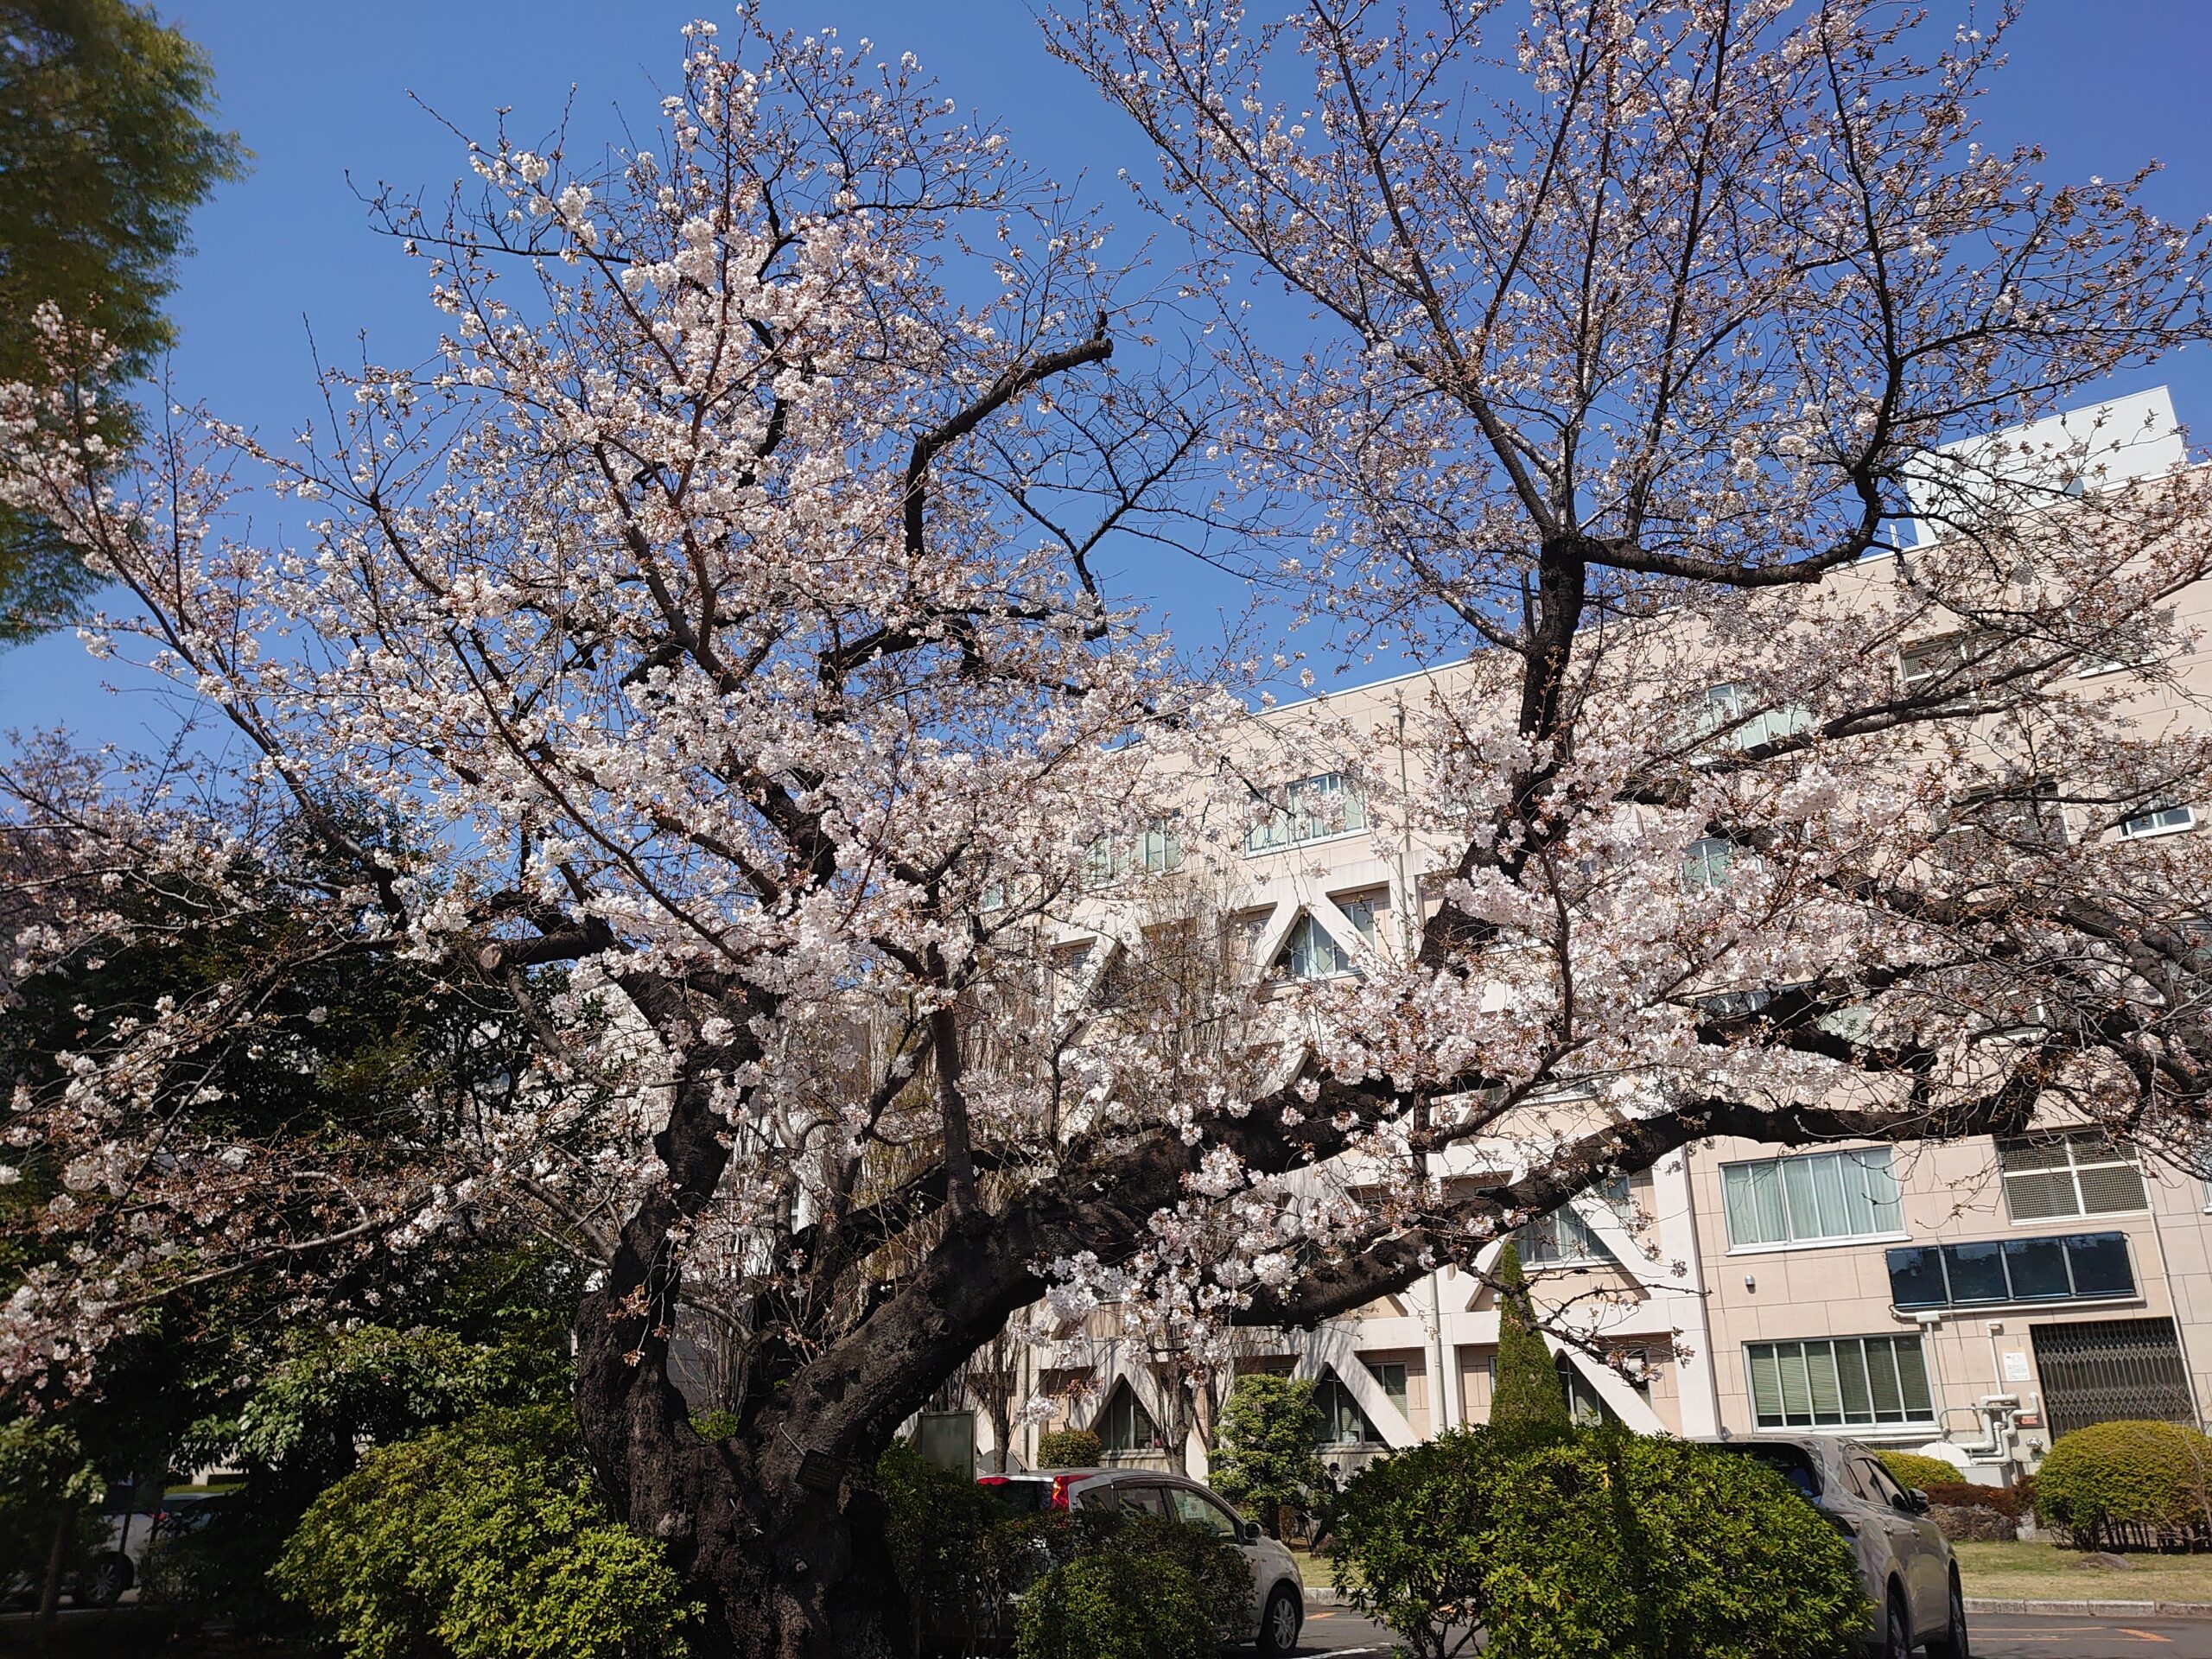 八分咲きの桜